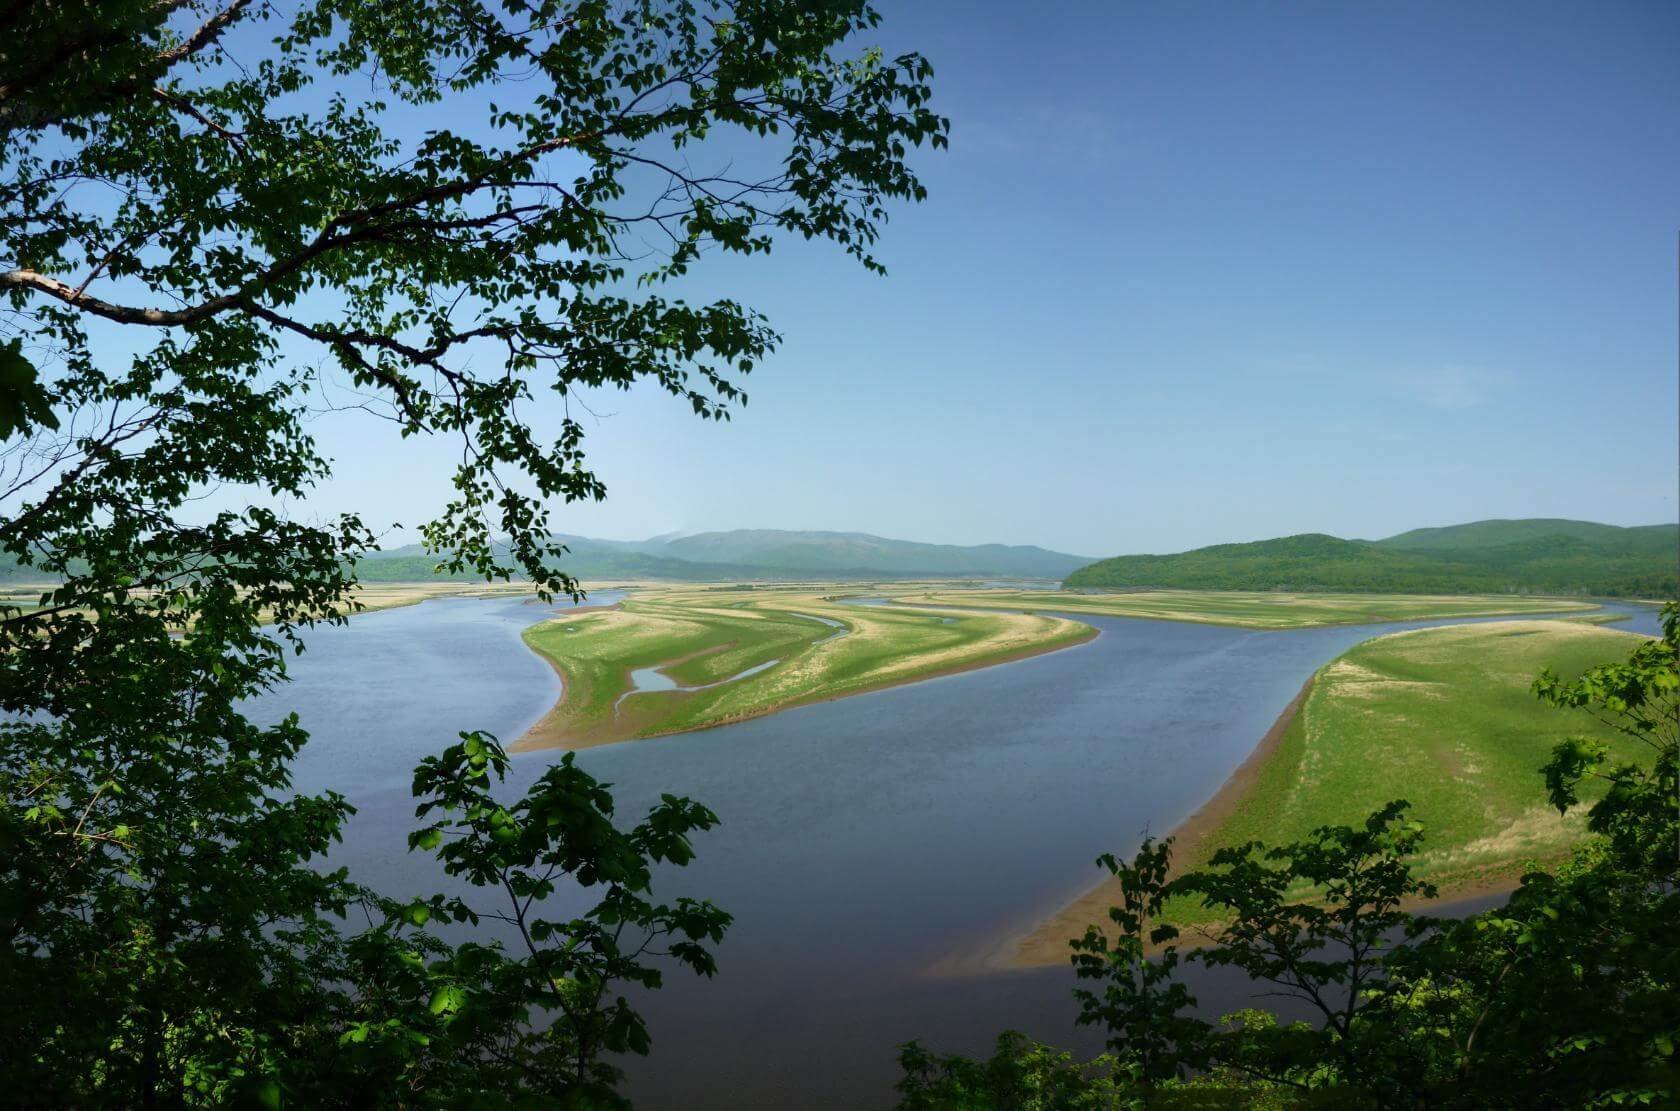 фото реки амур хабаровск